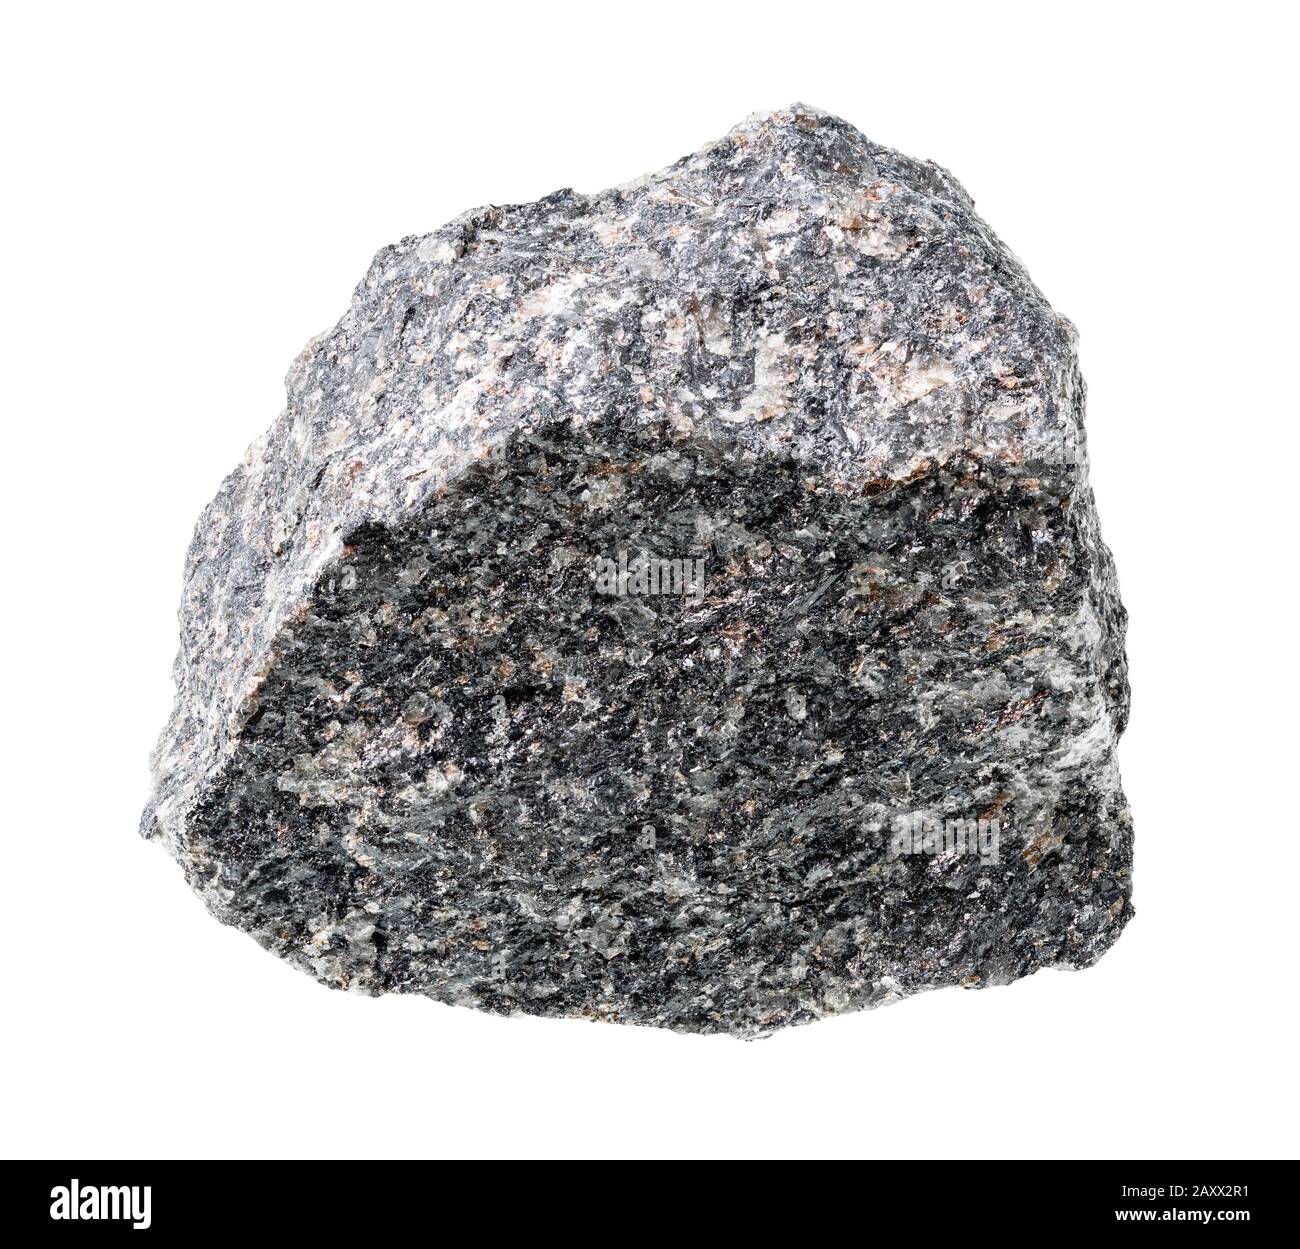 Rauer nepheline Syenite Rock auf weißem Hintergrund Stockfoto